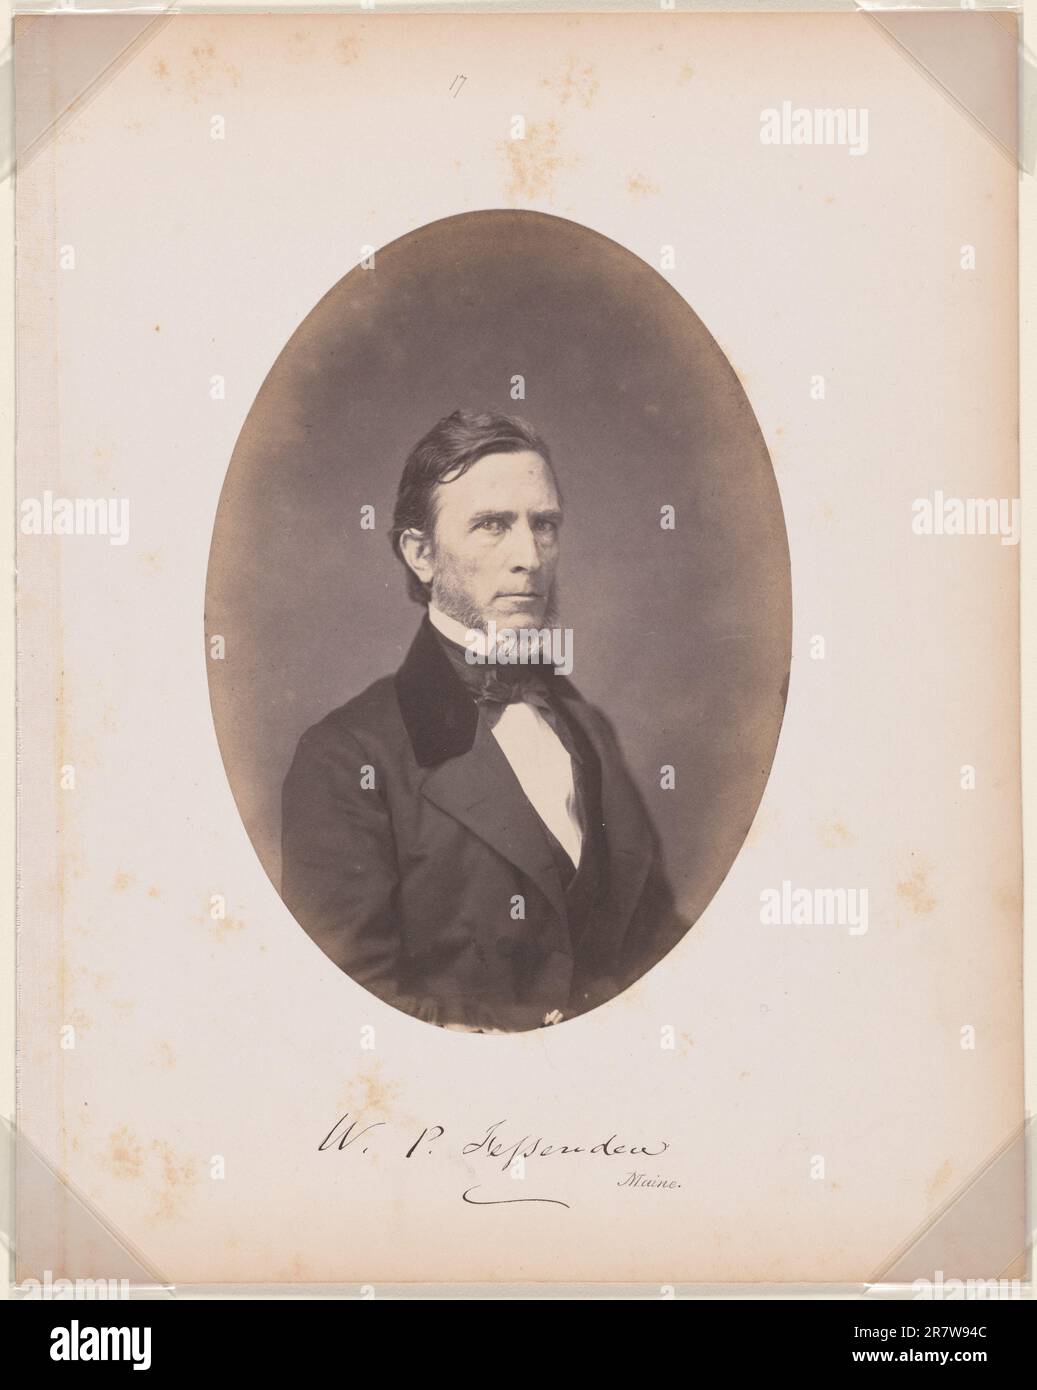 William Pitt Fessenden c. 1859 Stock Photo